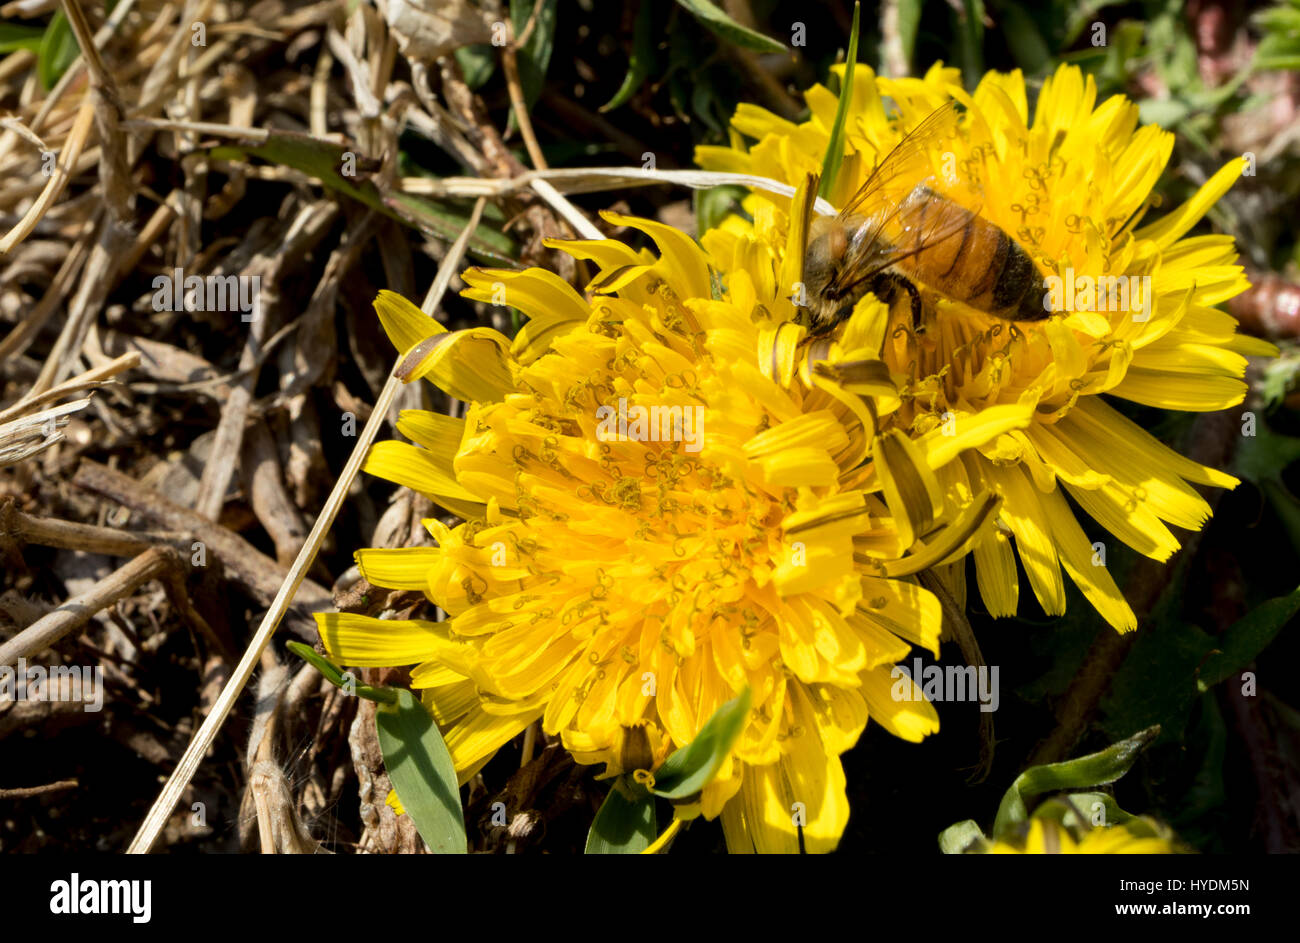 Löwenzahn ist wunderschön blühen auf den Garten und eine Biene isst den Honig aus der Blume. Stockfoto